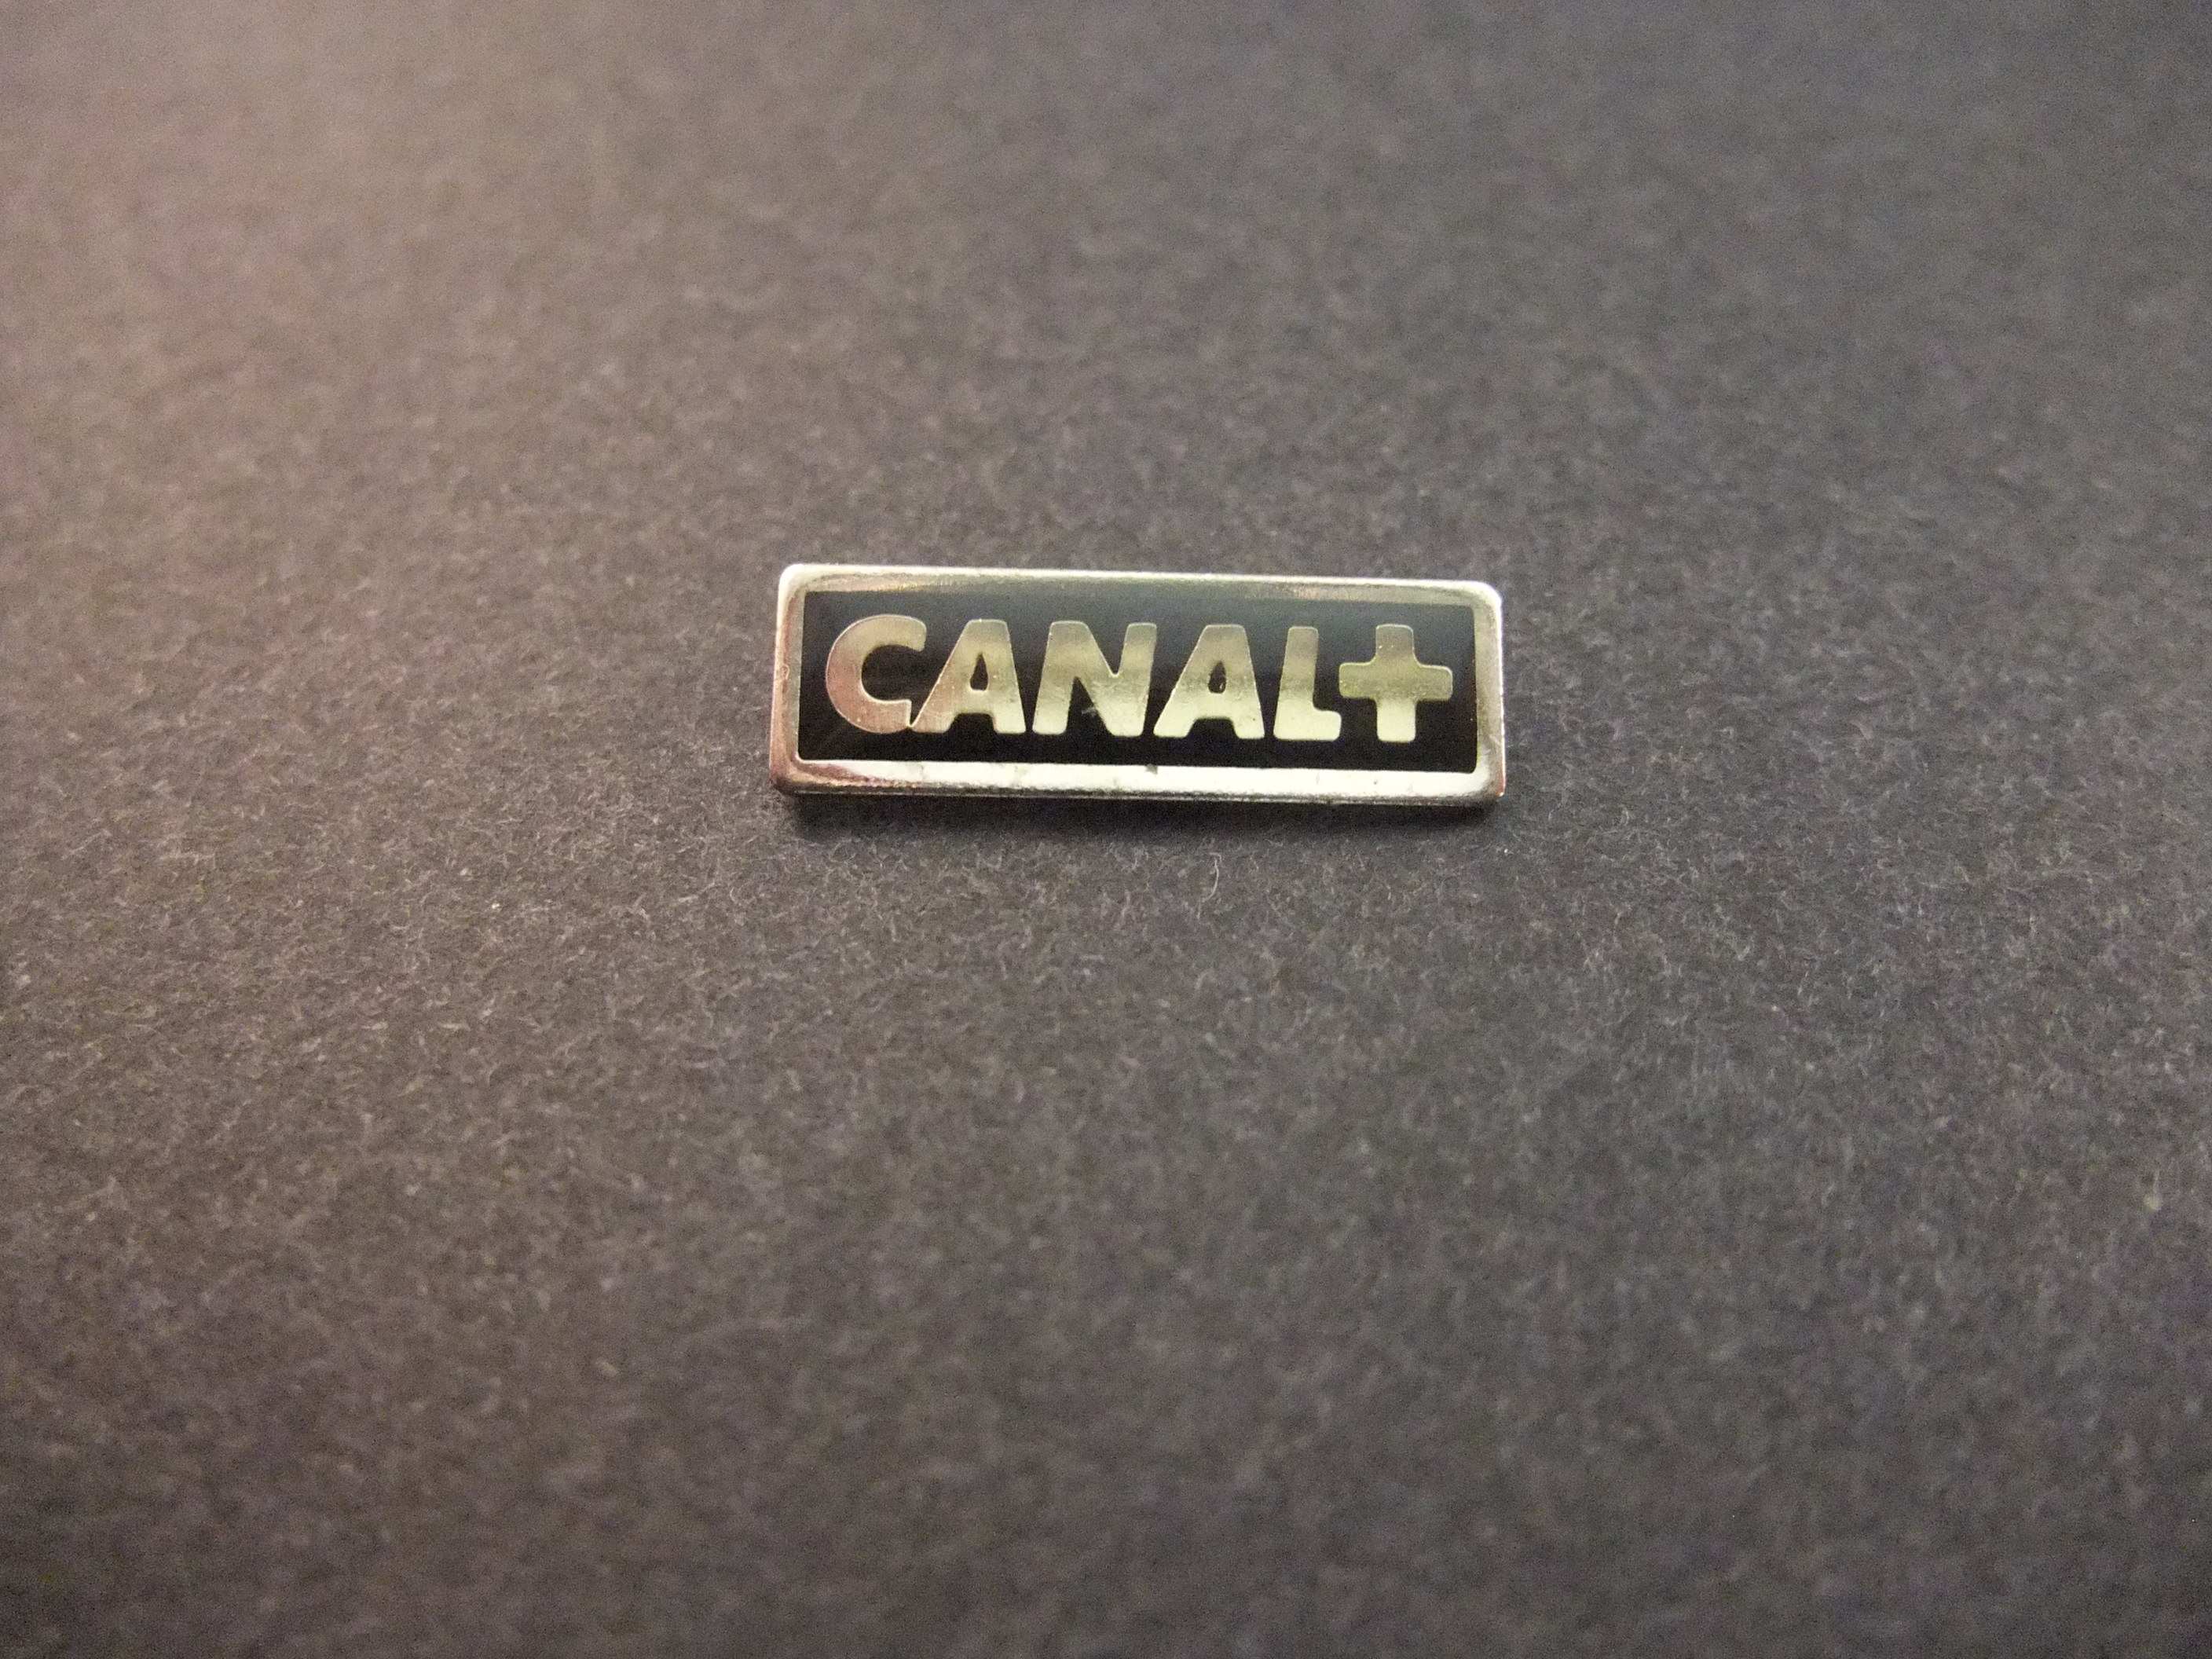 Canal + tv zender logo zwart